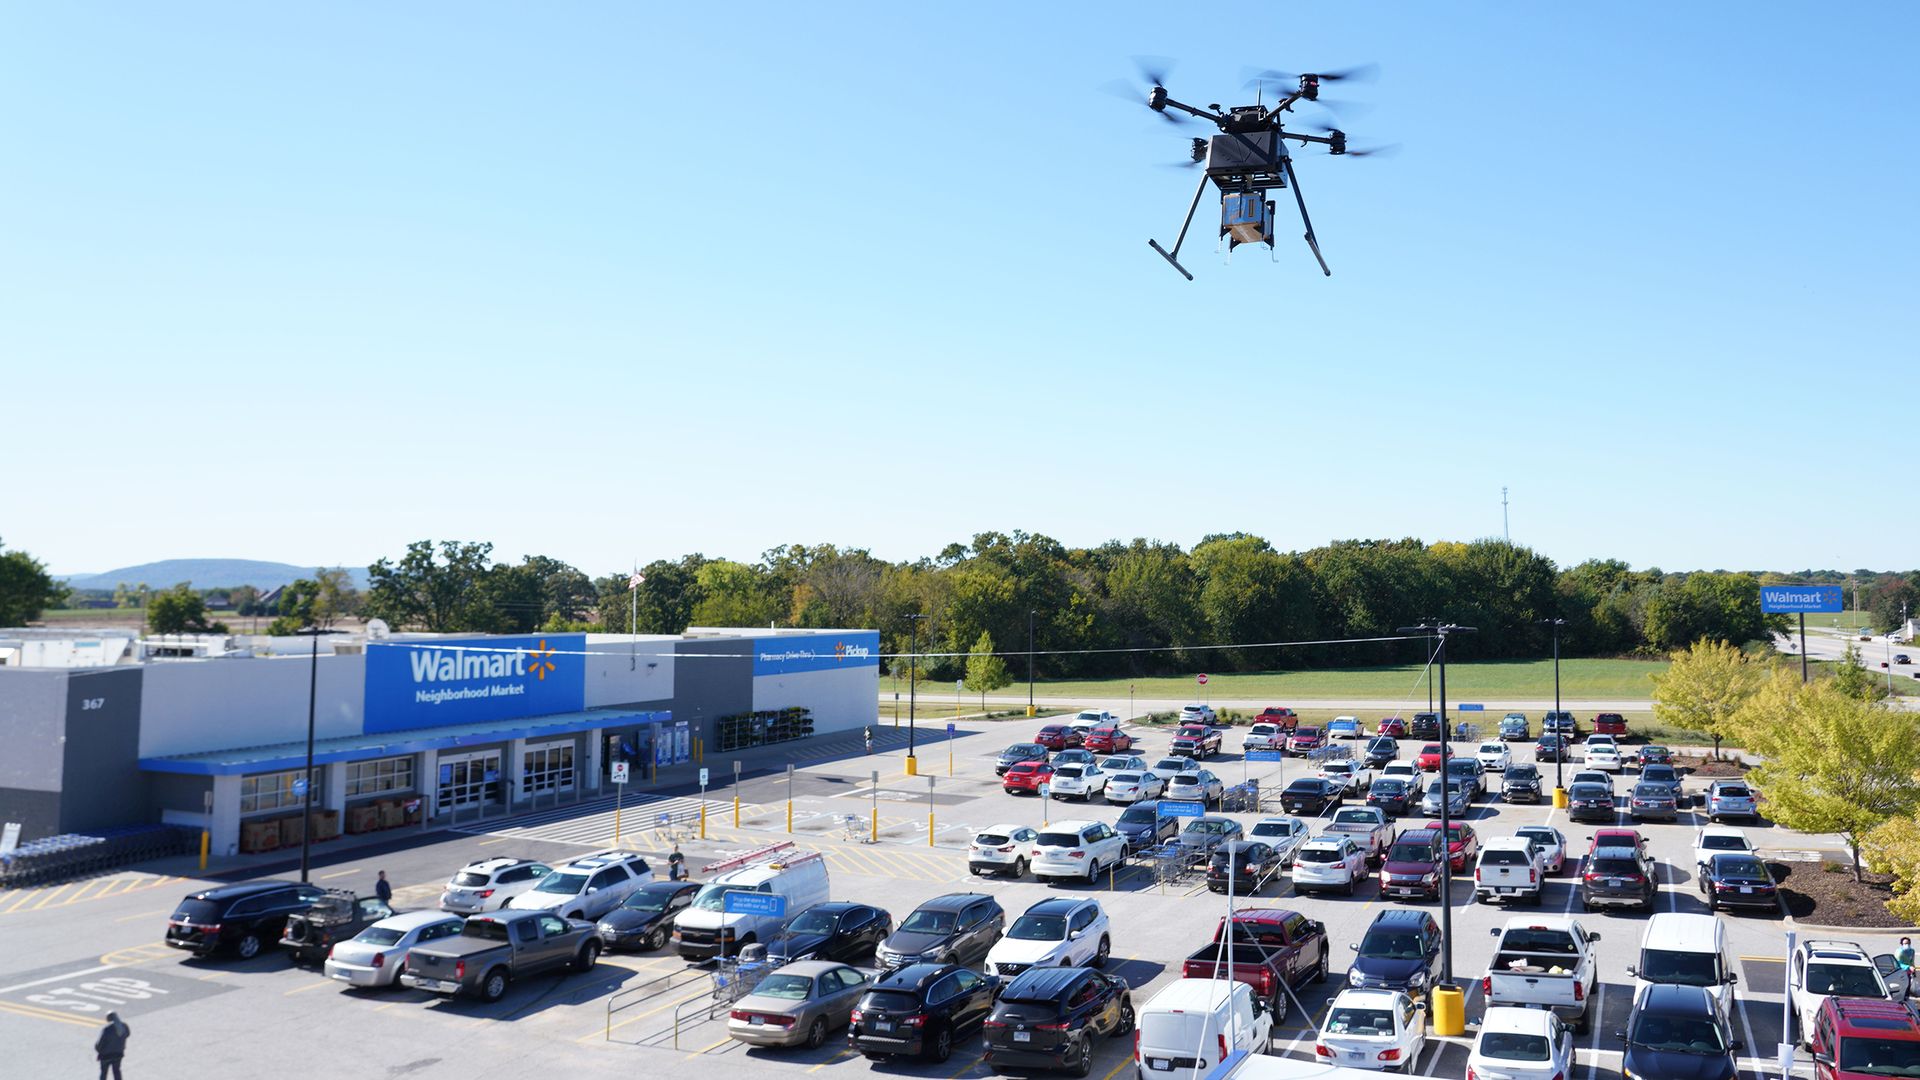 A drone flies over a Walmart parking lot.